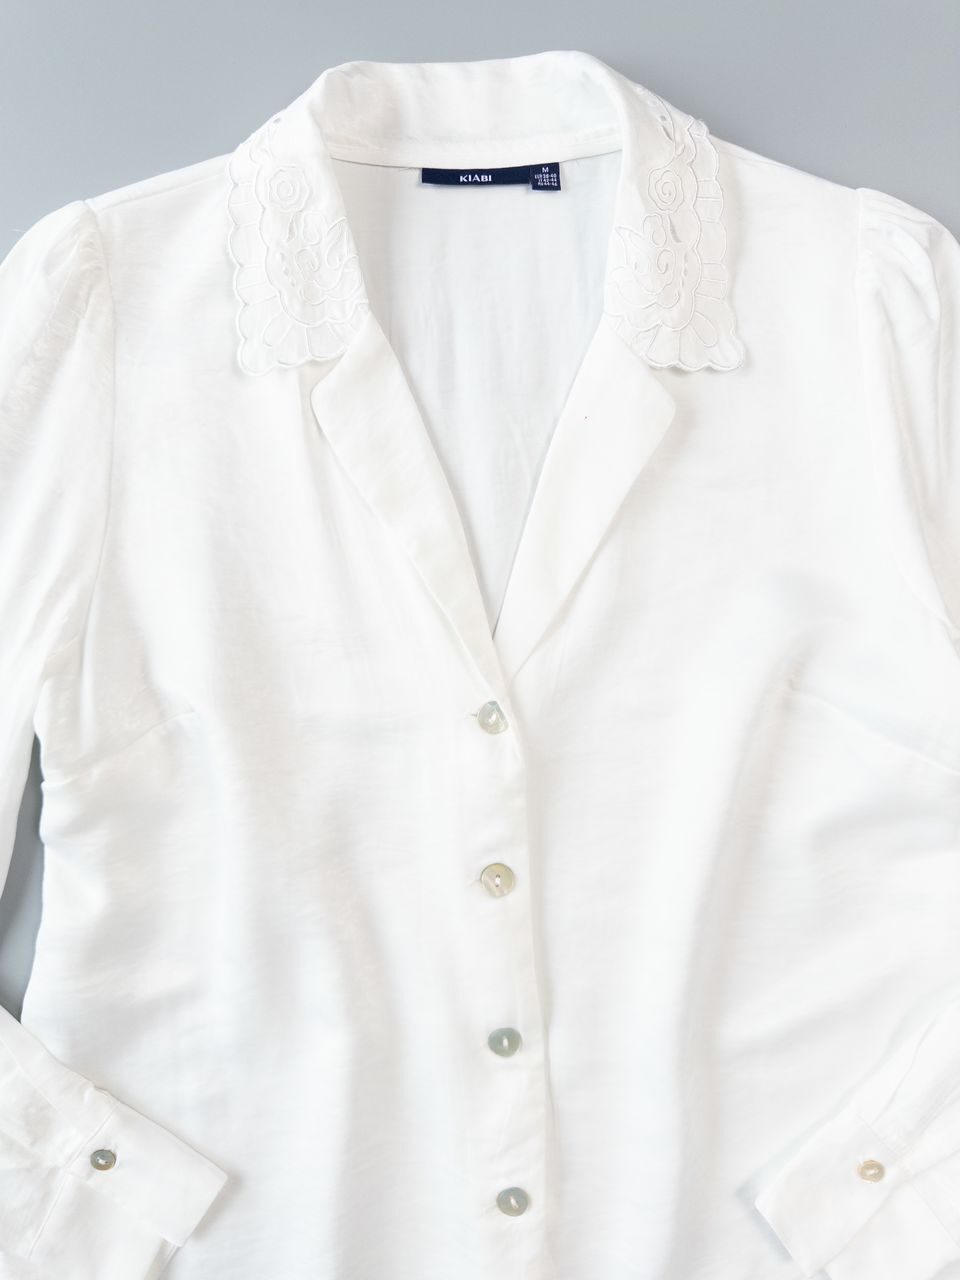 Блуза свободная на пуговицах с вышивкой на воротнике цвет молочный с легким блеском размер EUR М 38-40 (rus 44-46) KIABI